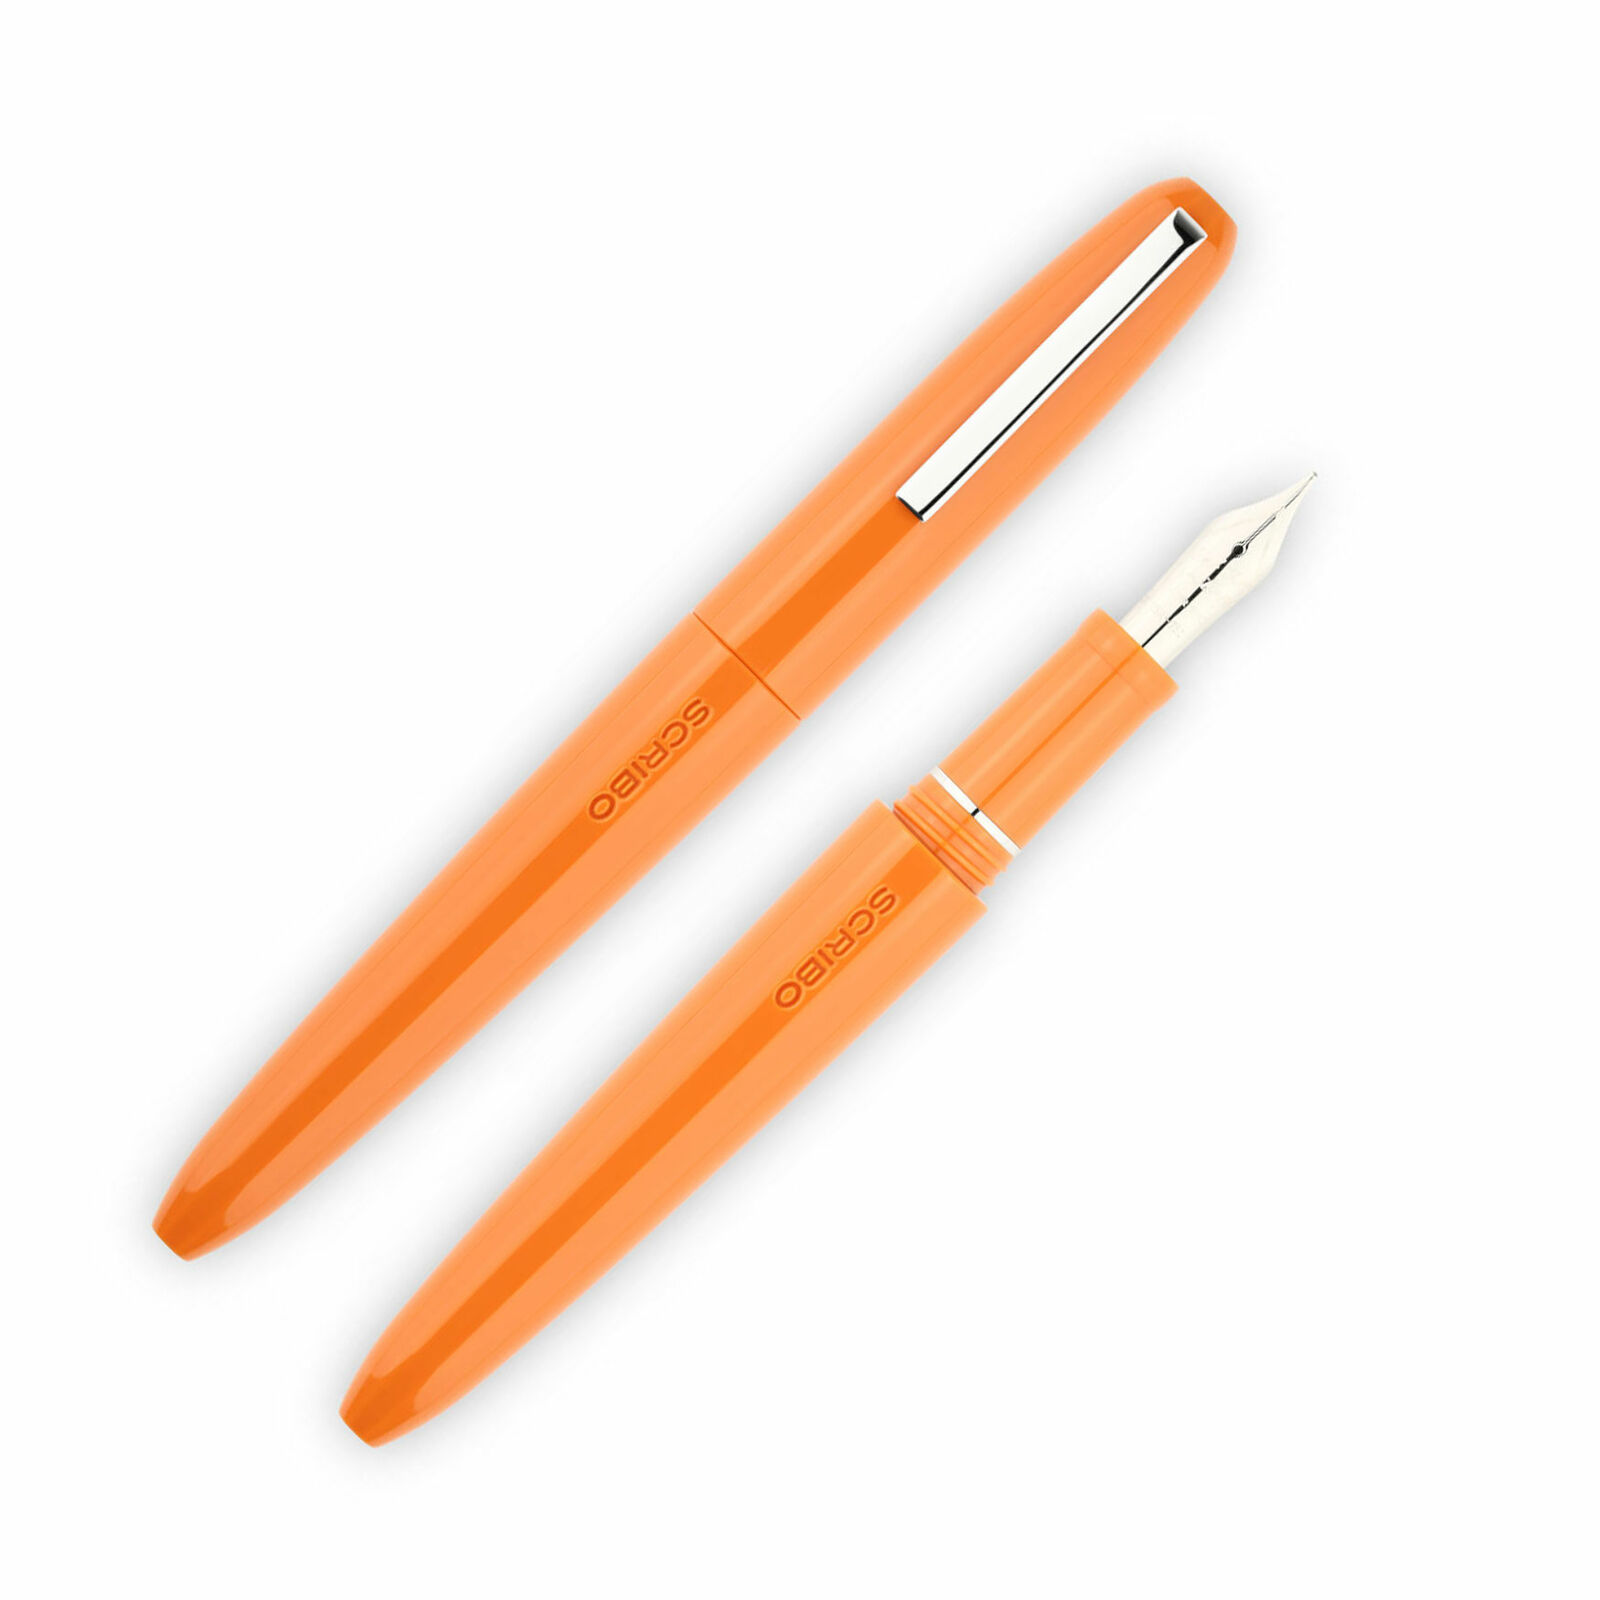 Scribo Piuma Fountain Pen in Levante Orange 14K Flexible Gold Nib - Extra Fine